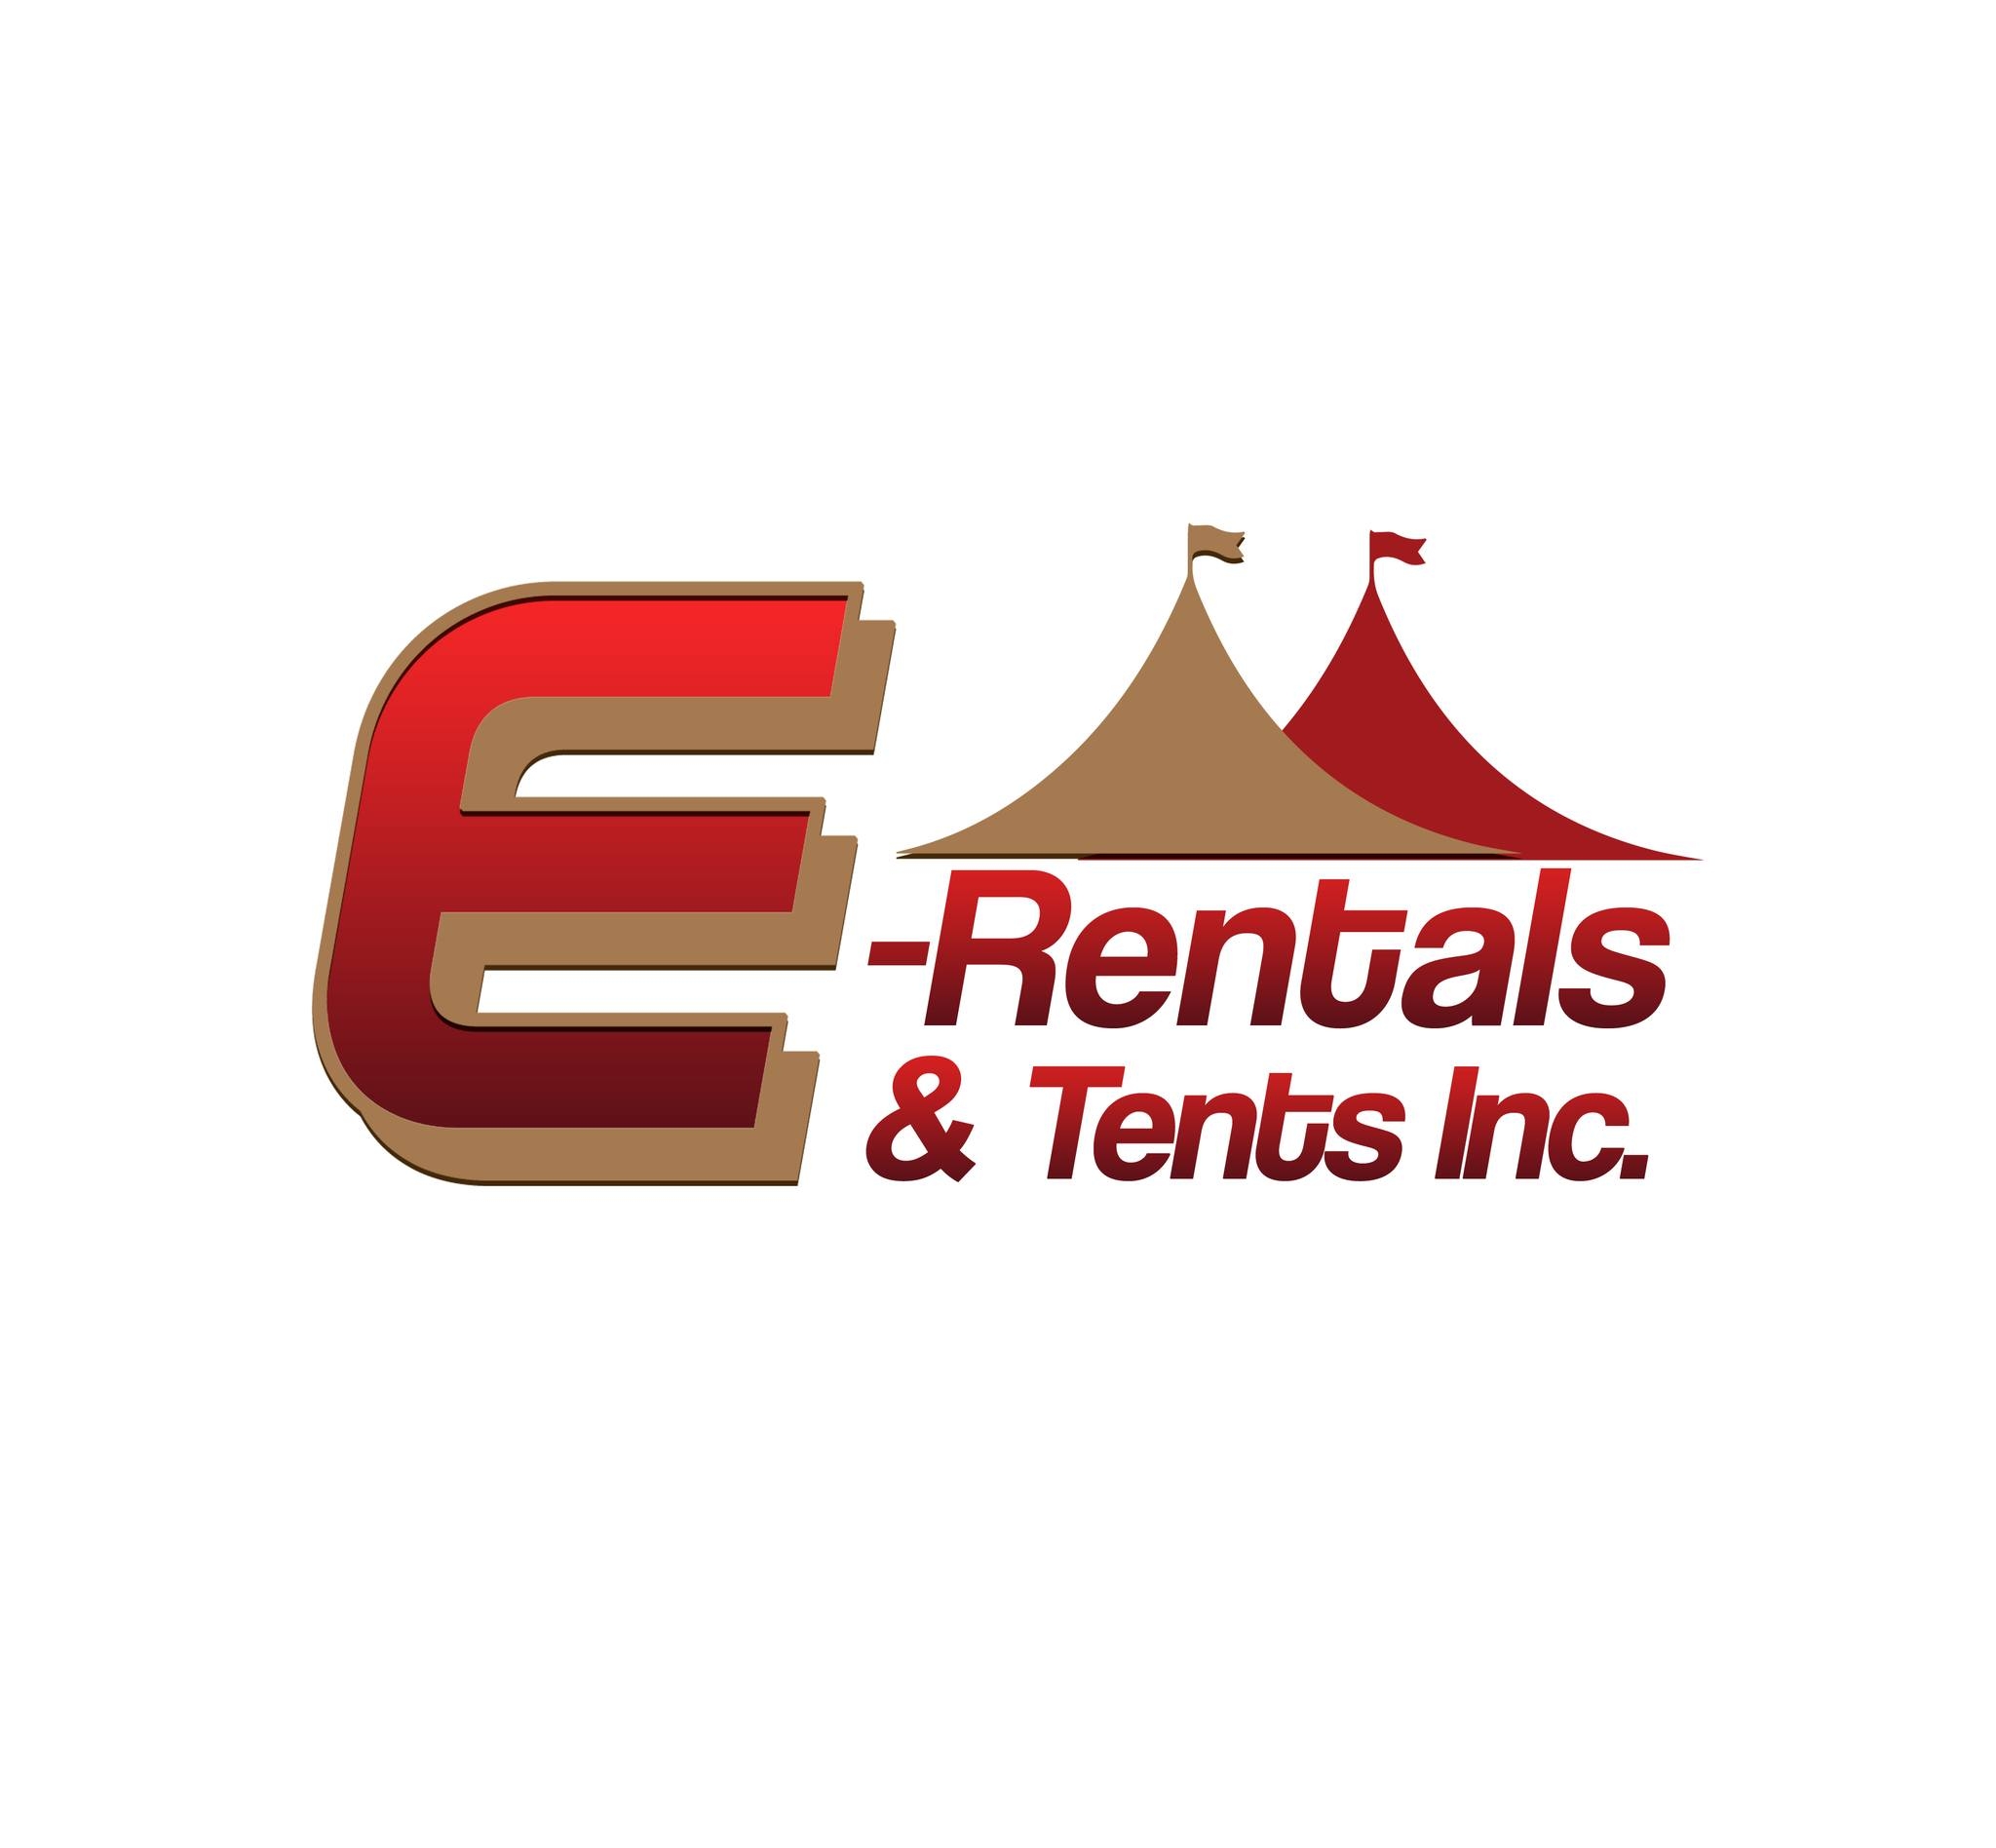 E-Rentals & Tents